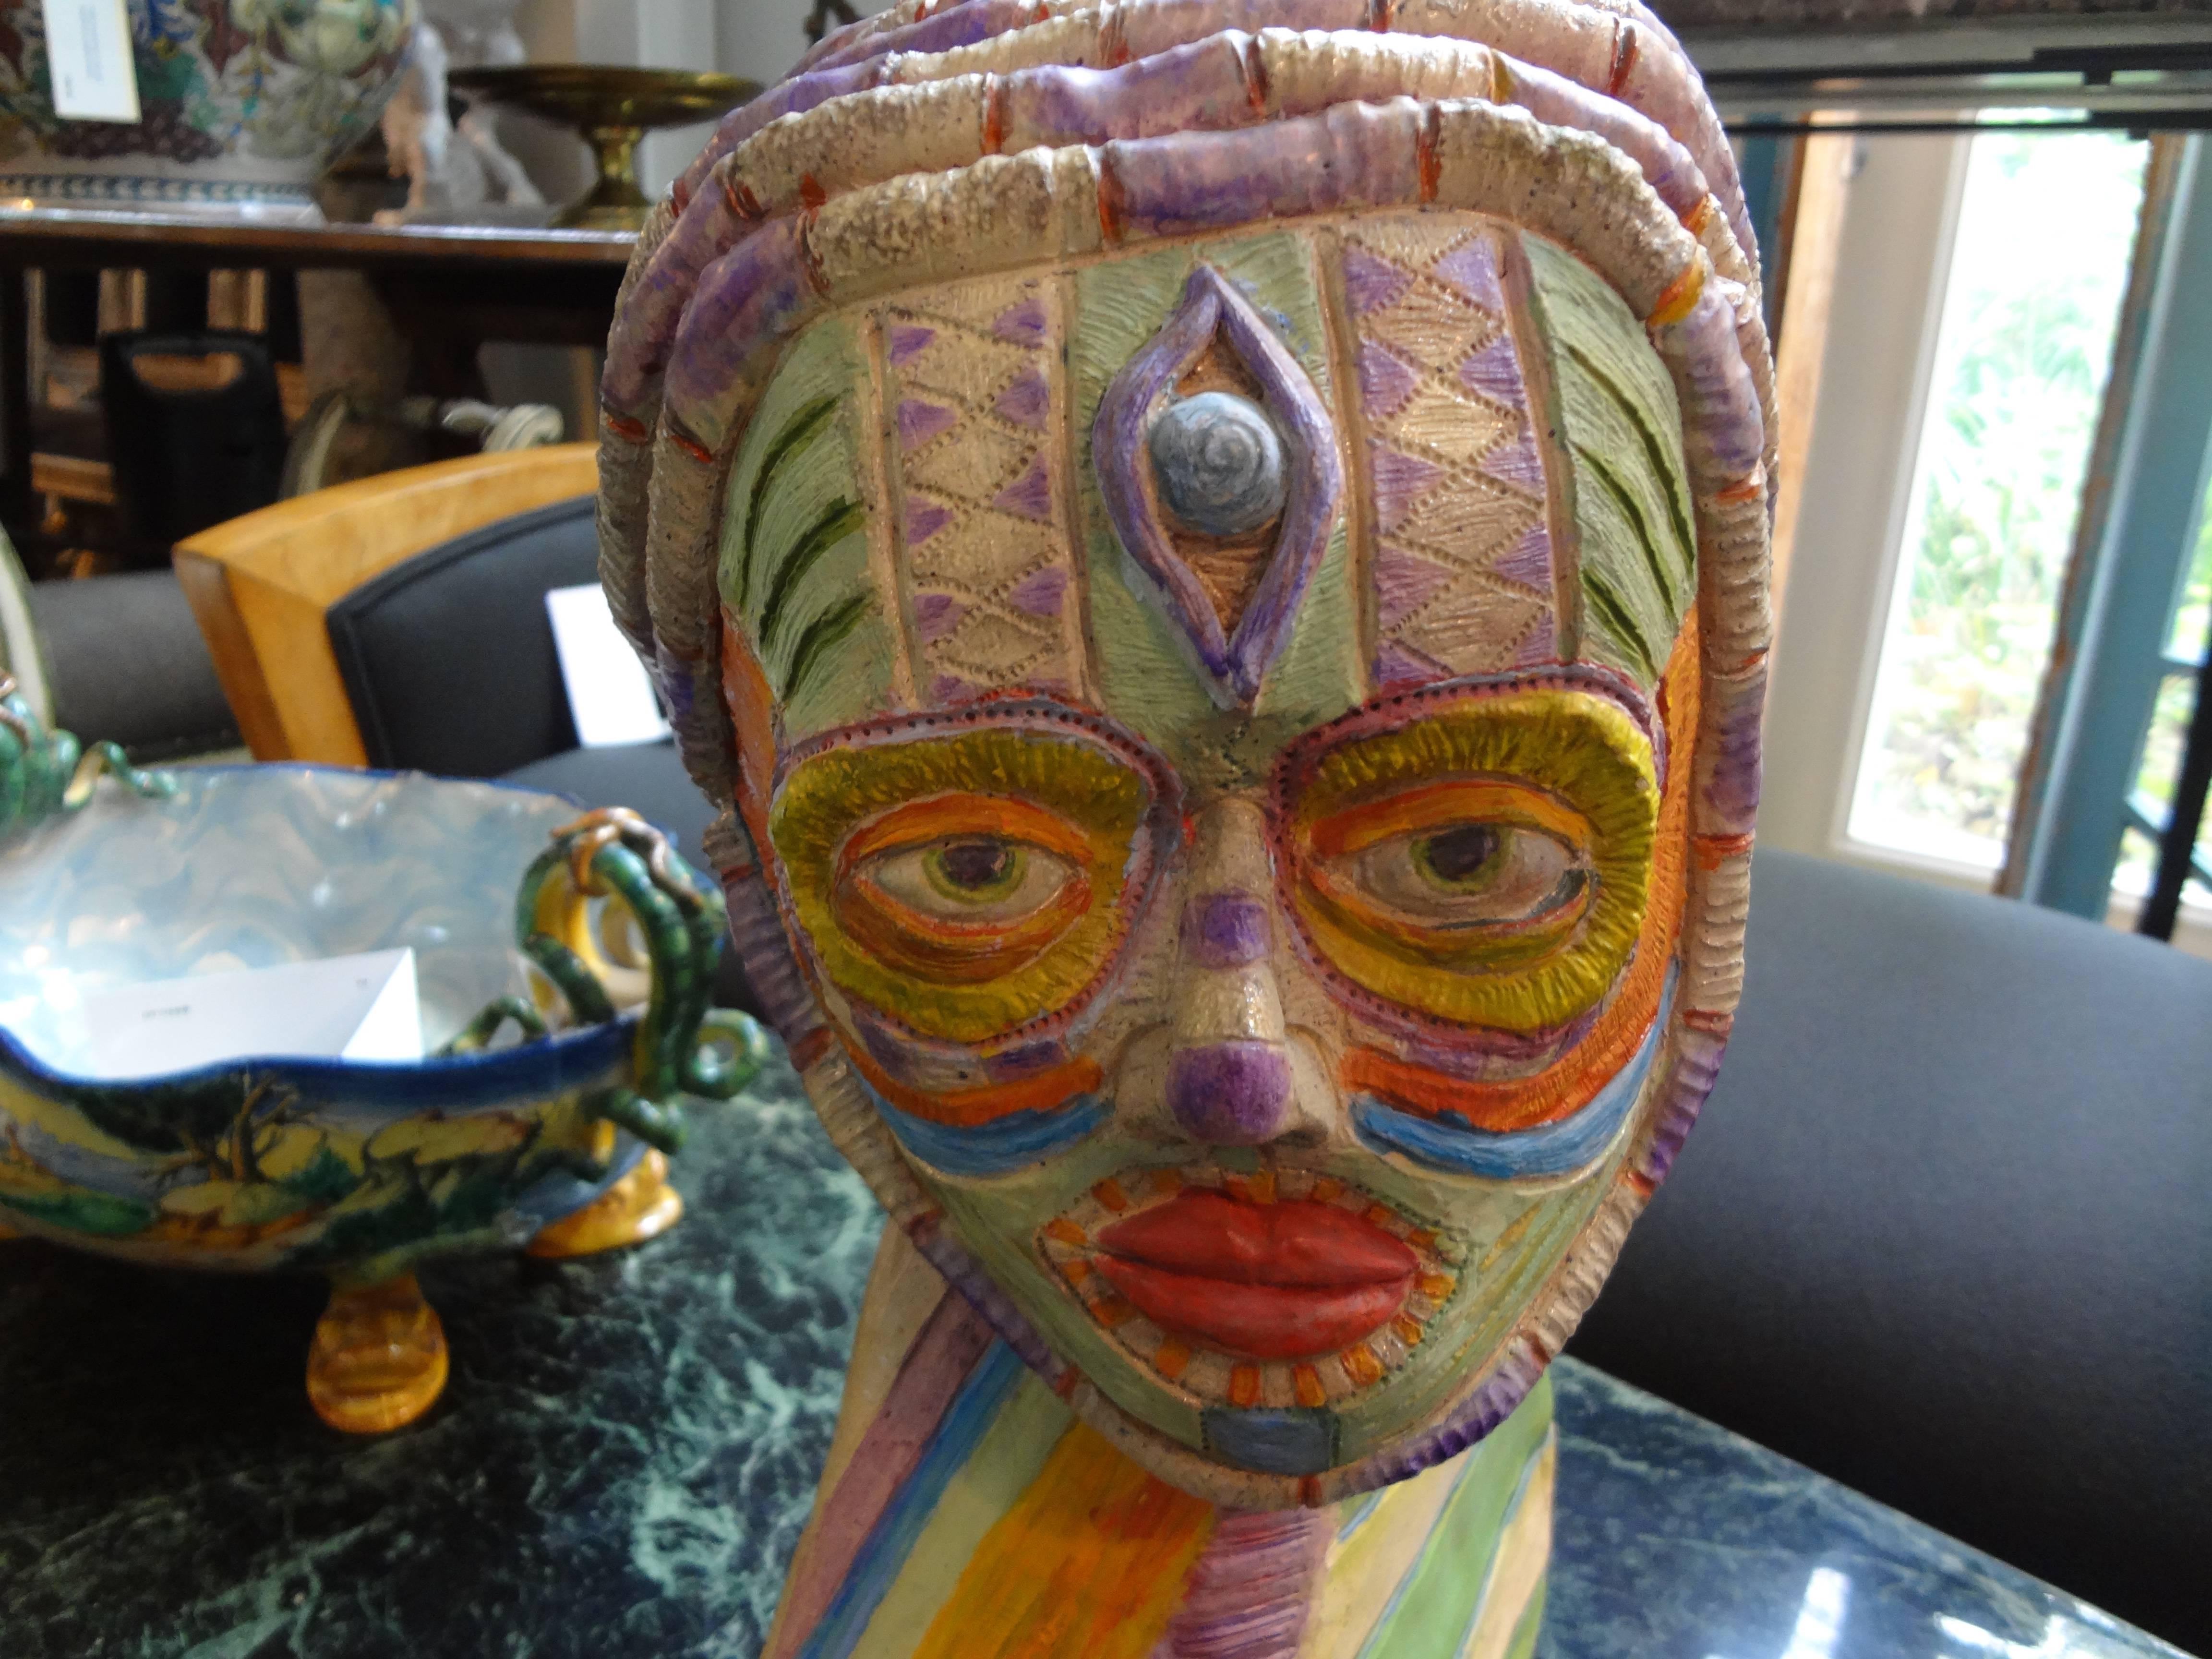 Sculpture de buste en argile de style tribal.
Insolite buste d'artiste en terre cuite de style tribal / africain datant du 20e siècle. Cette sculpture d'artiste unique et colorée représente une figure tribale.